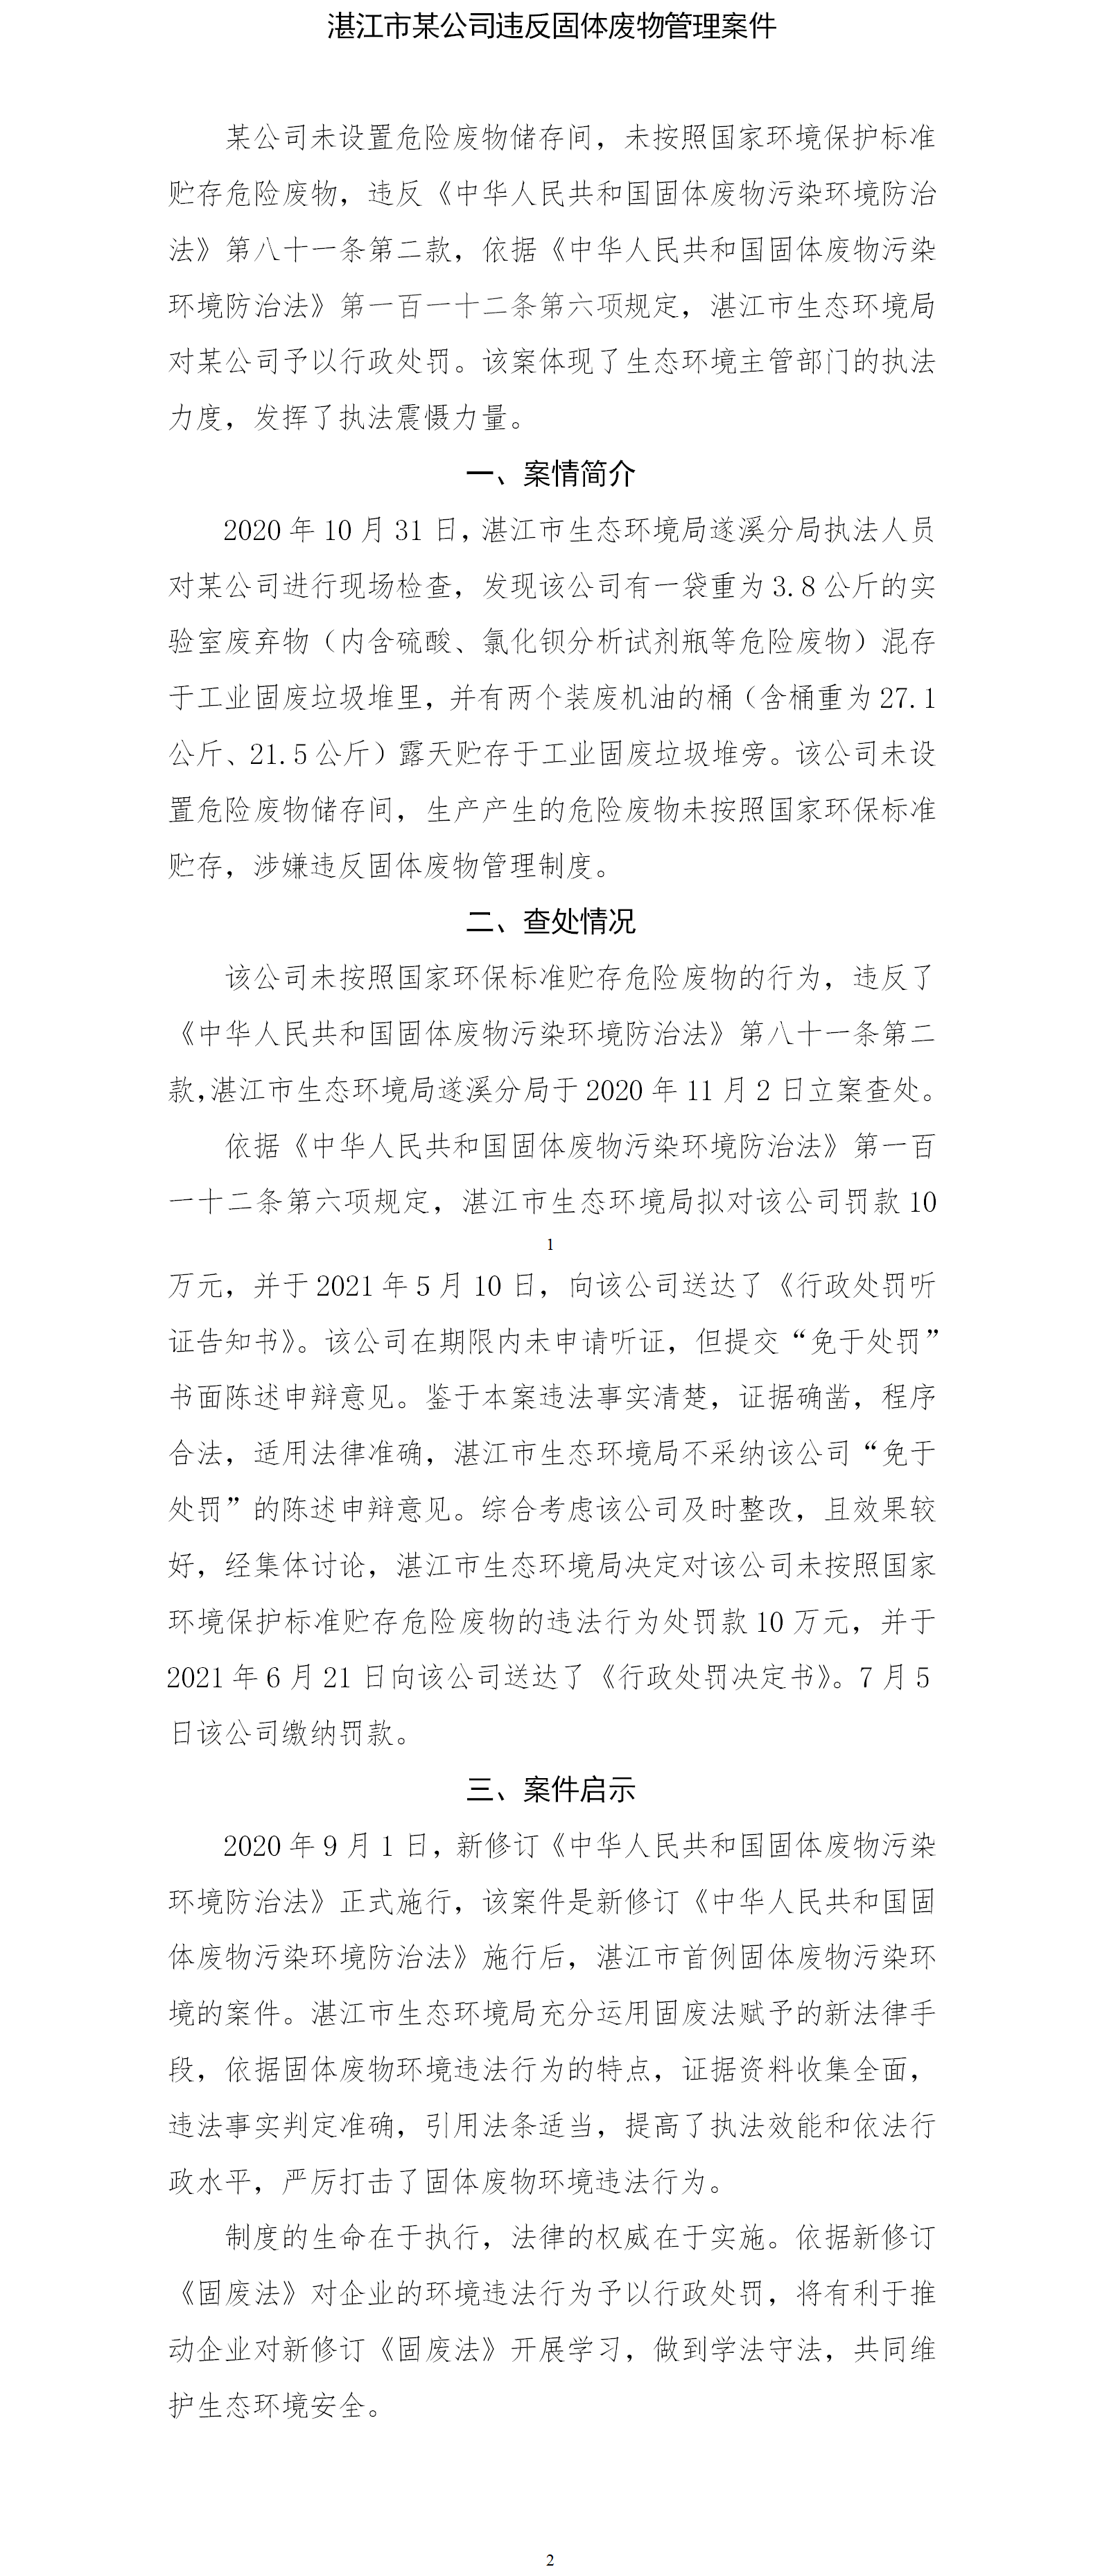 湛江市某公司违反固体废物管理制度案件.png